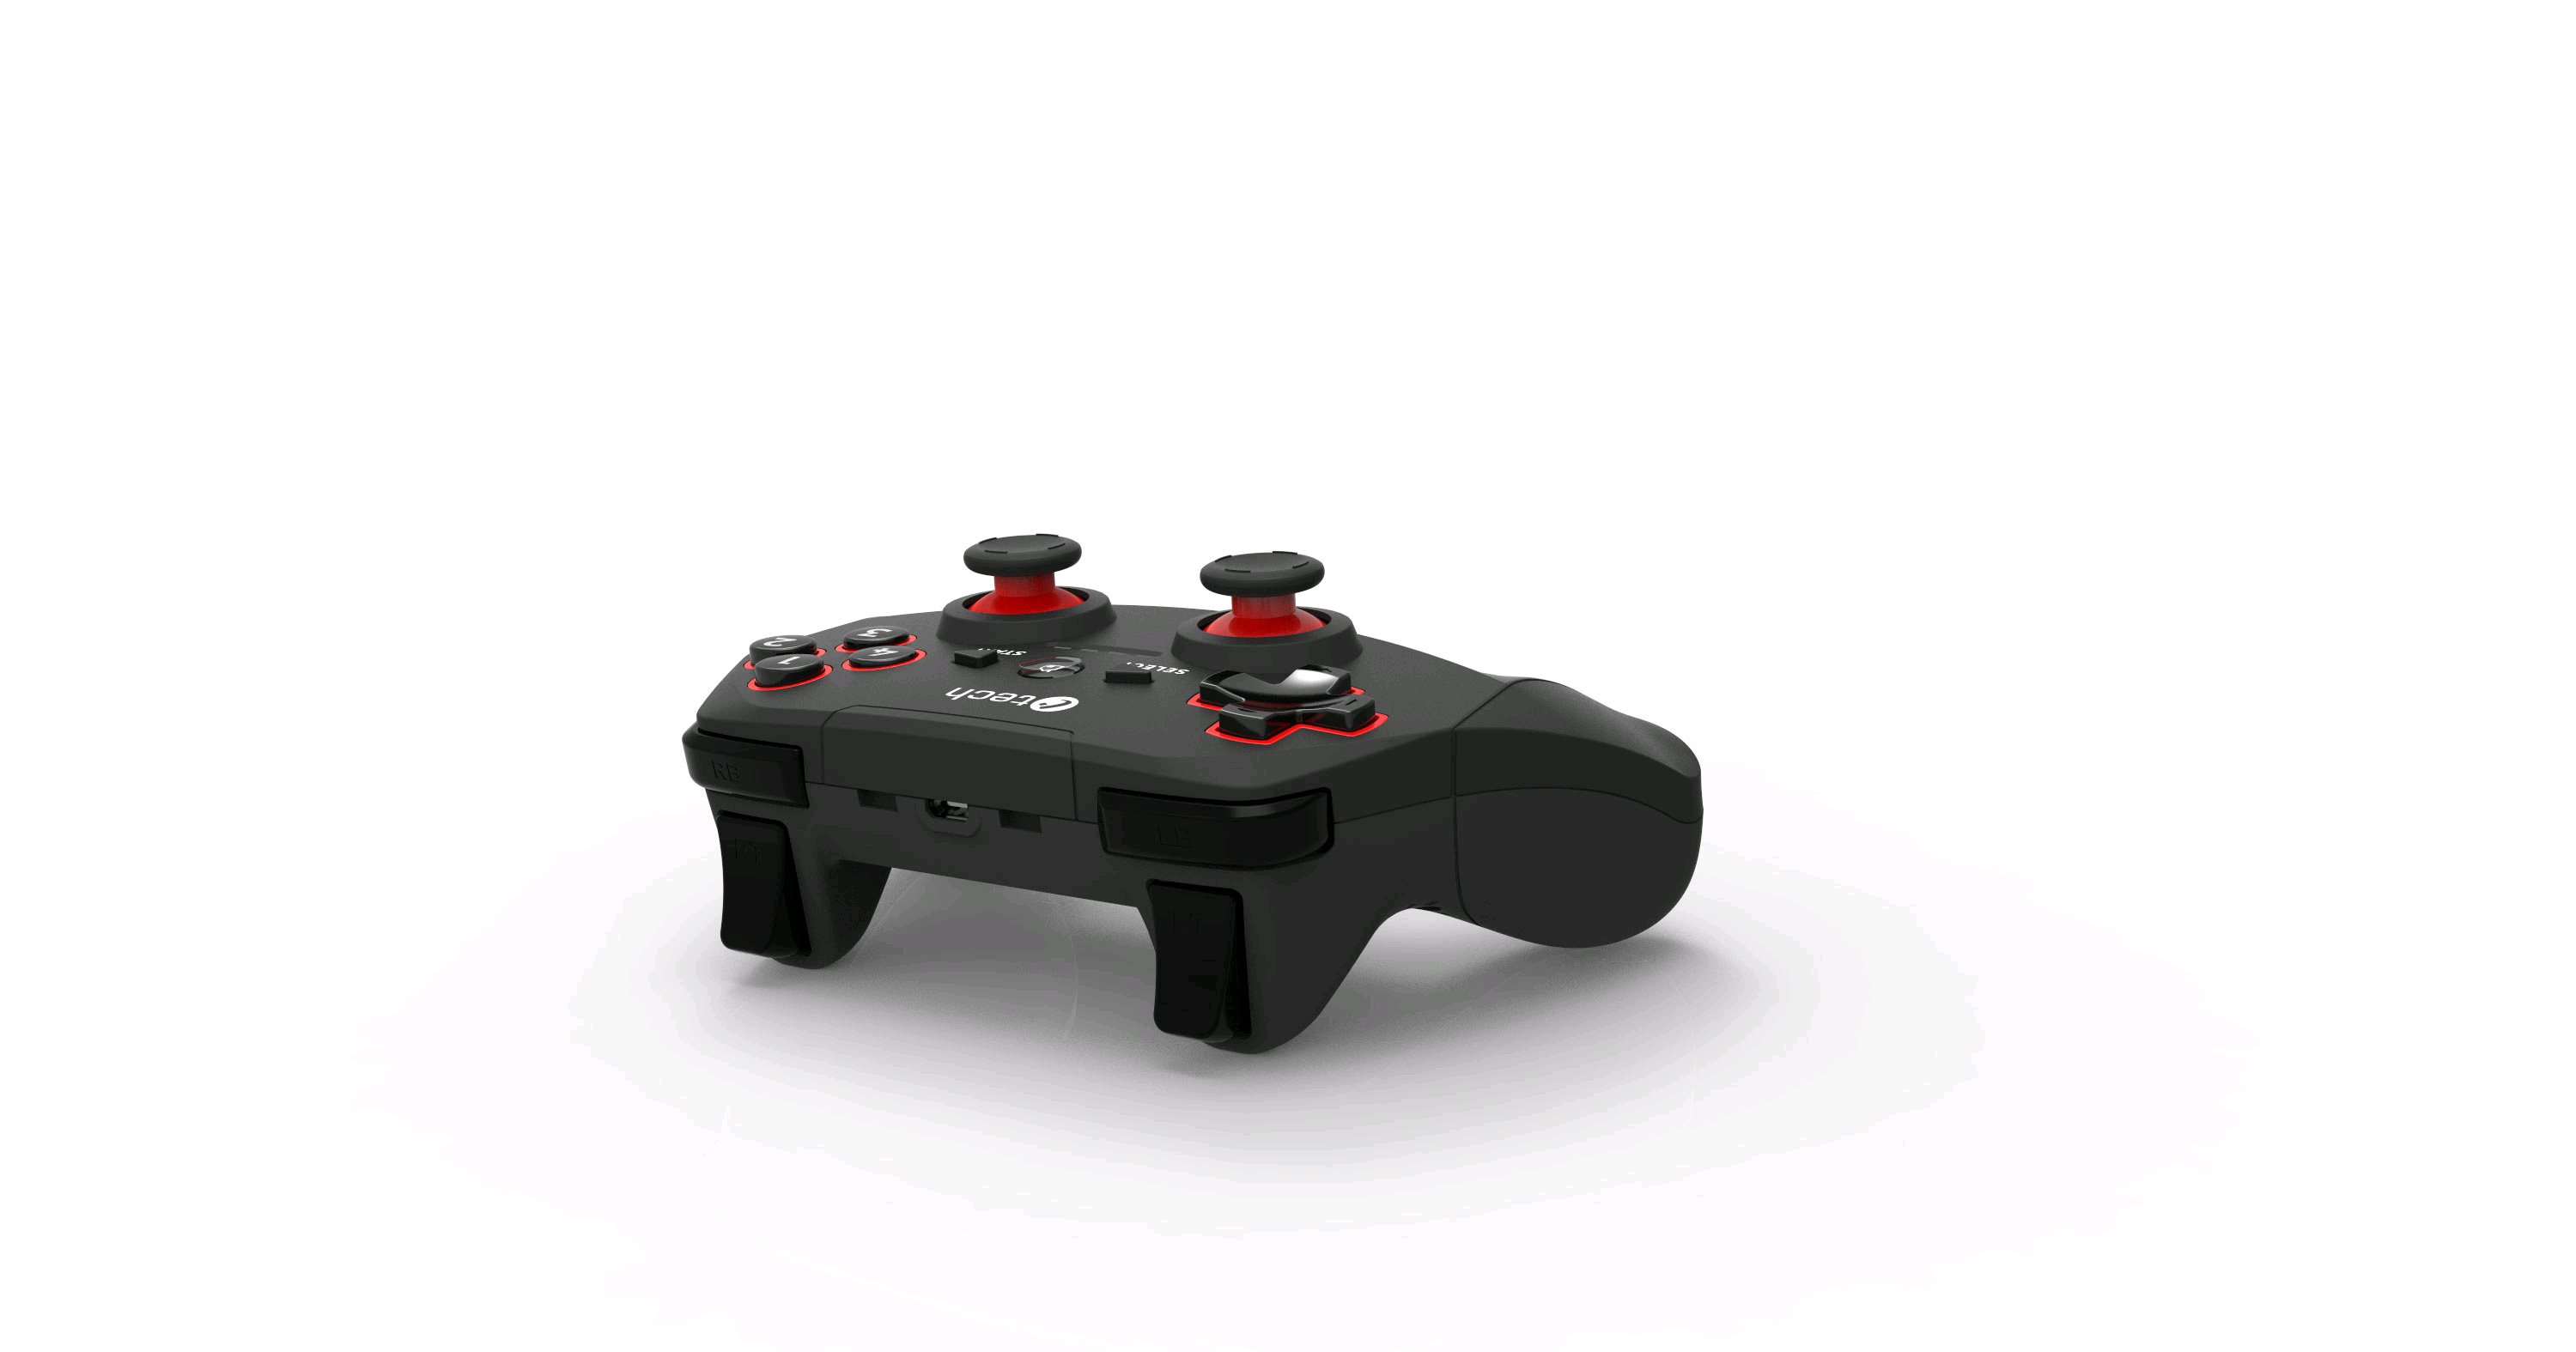 Obrázek Gamepad C-TECH Khort pro PC/PS3/Android, 2x analog, X-input, vibrační, bezdrátový, USB